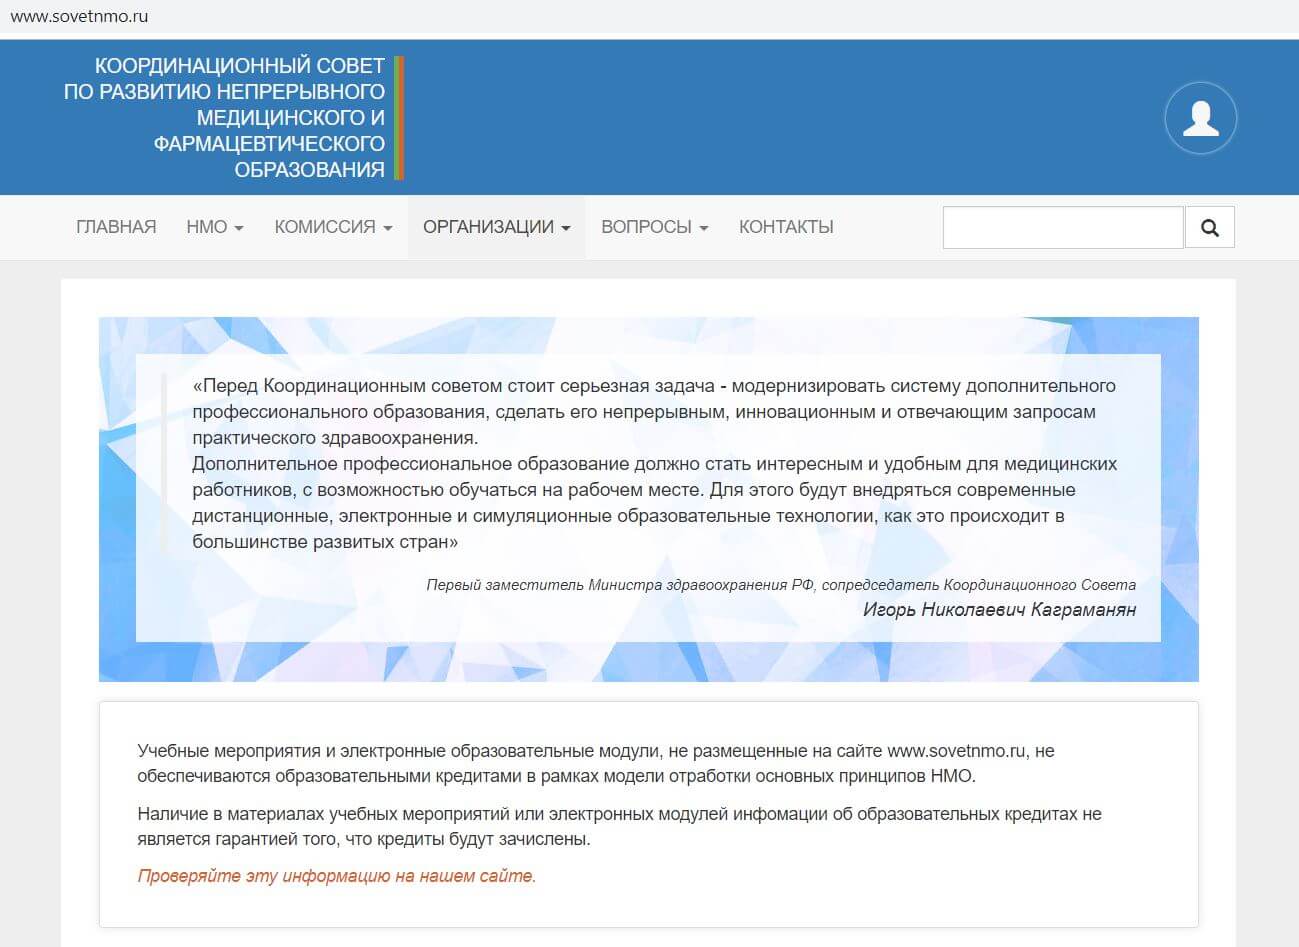 главная страница портала sovetnmo.ru